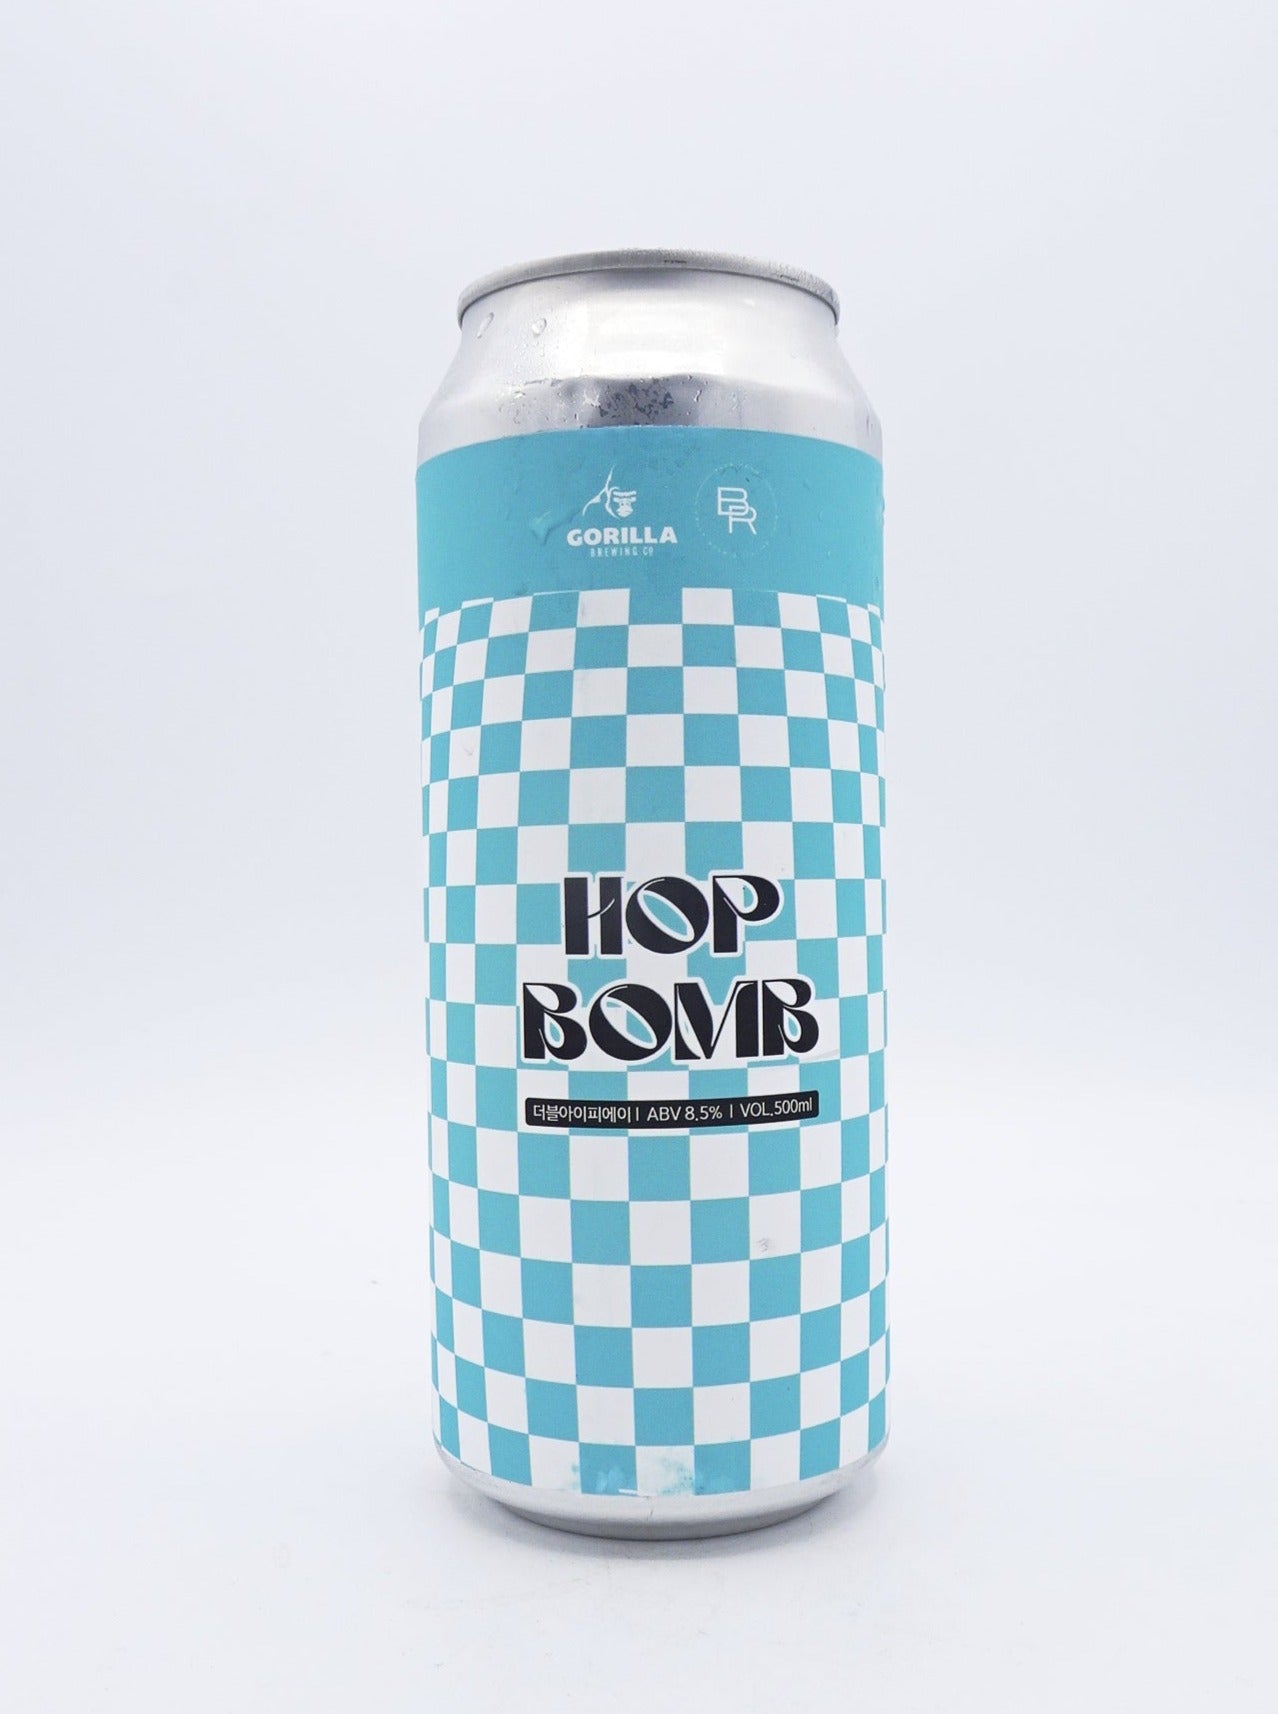 Hop Bomb Double IPA / ホップボムDIPA